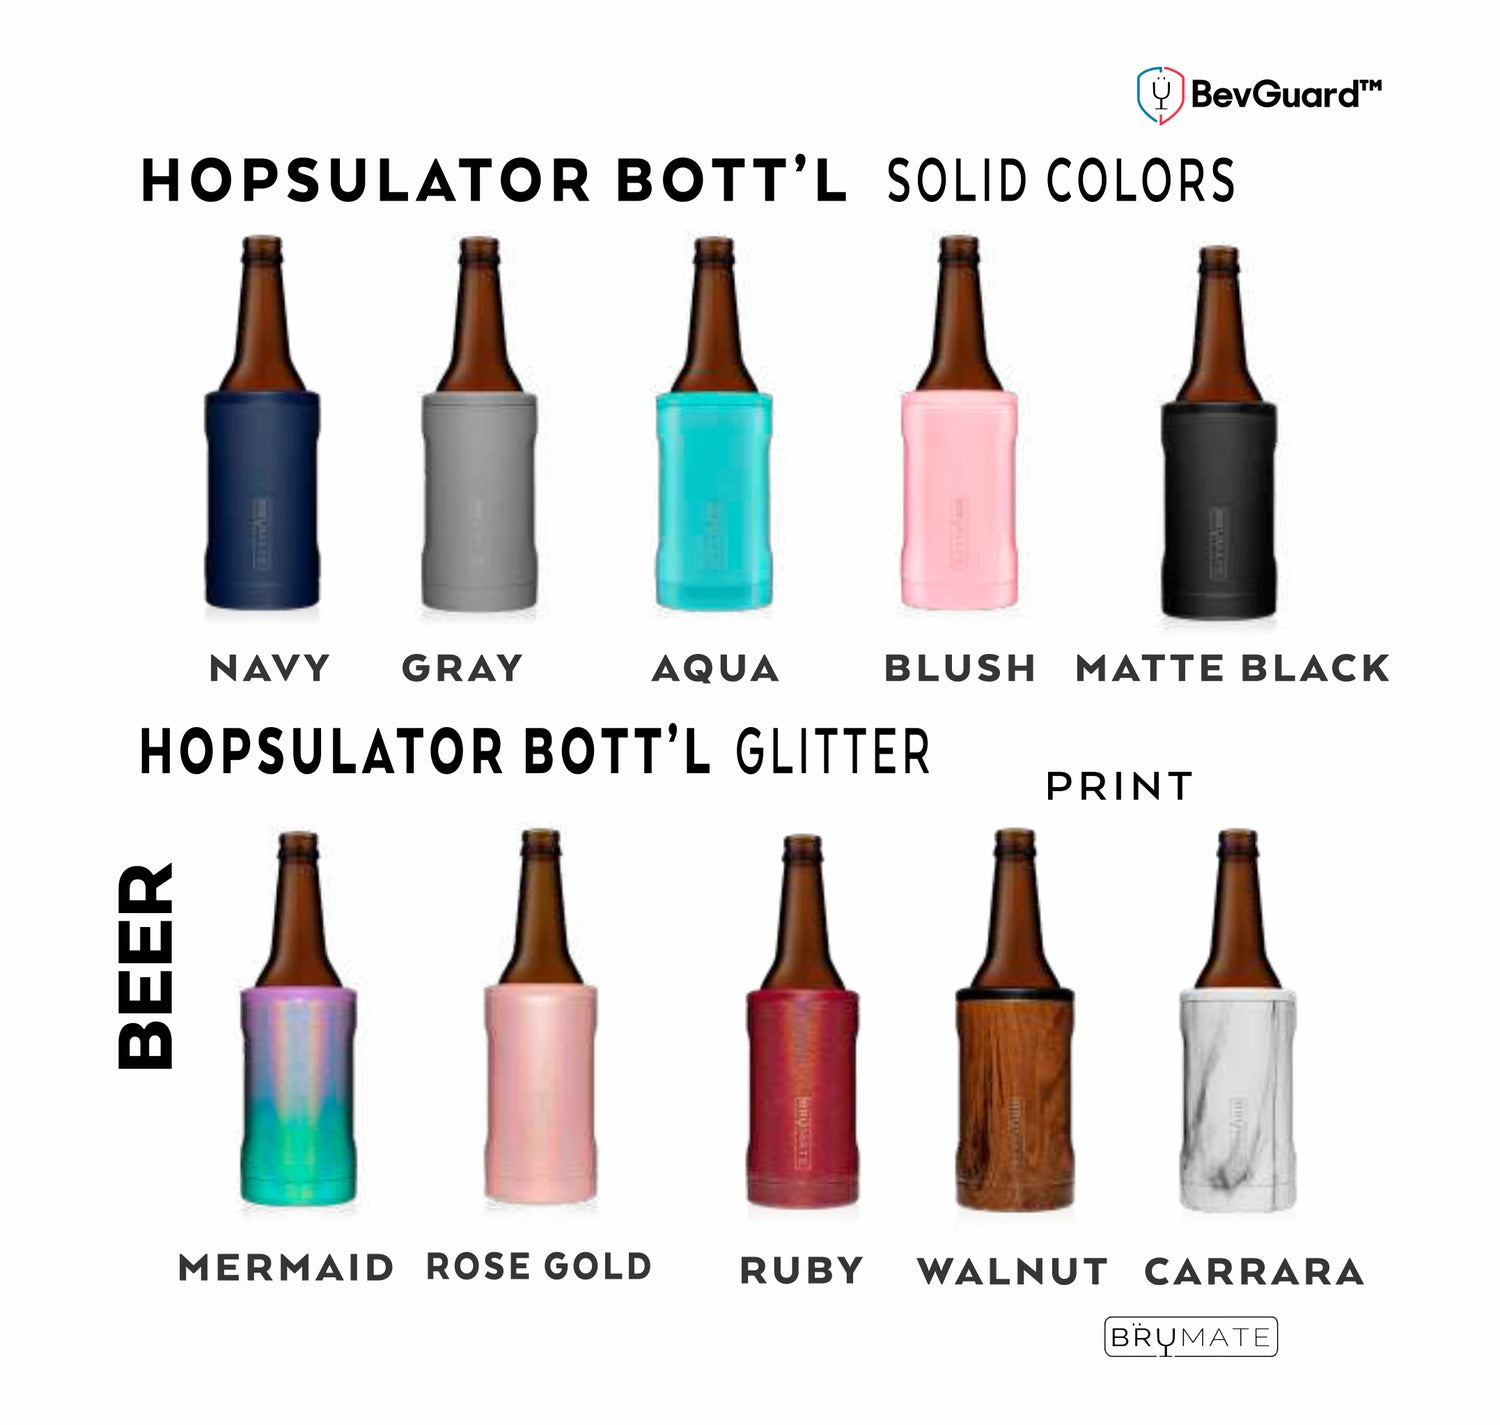 Brumate Hopsulator Bottle Glitter White 12oz Bottles